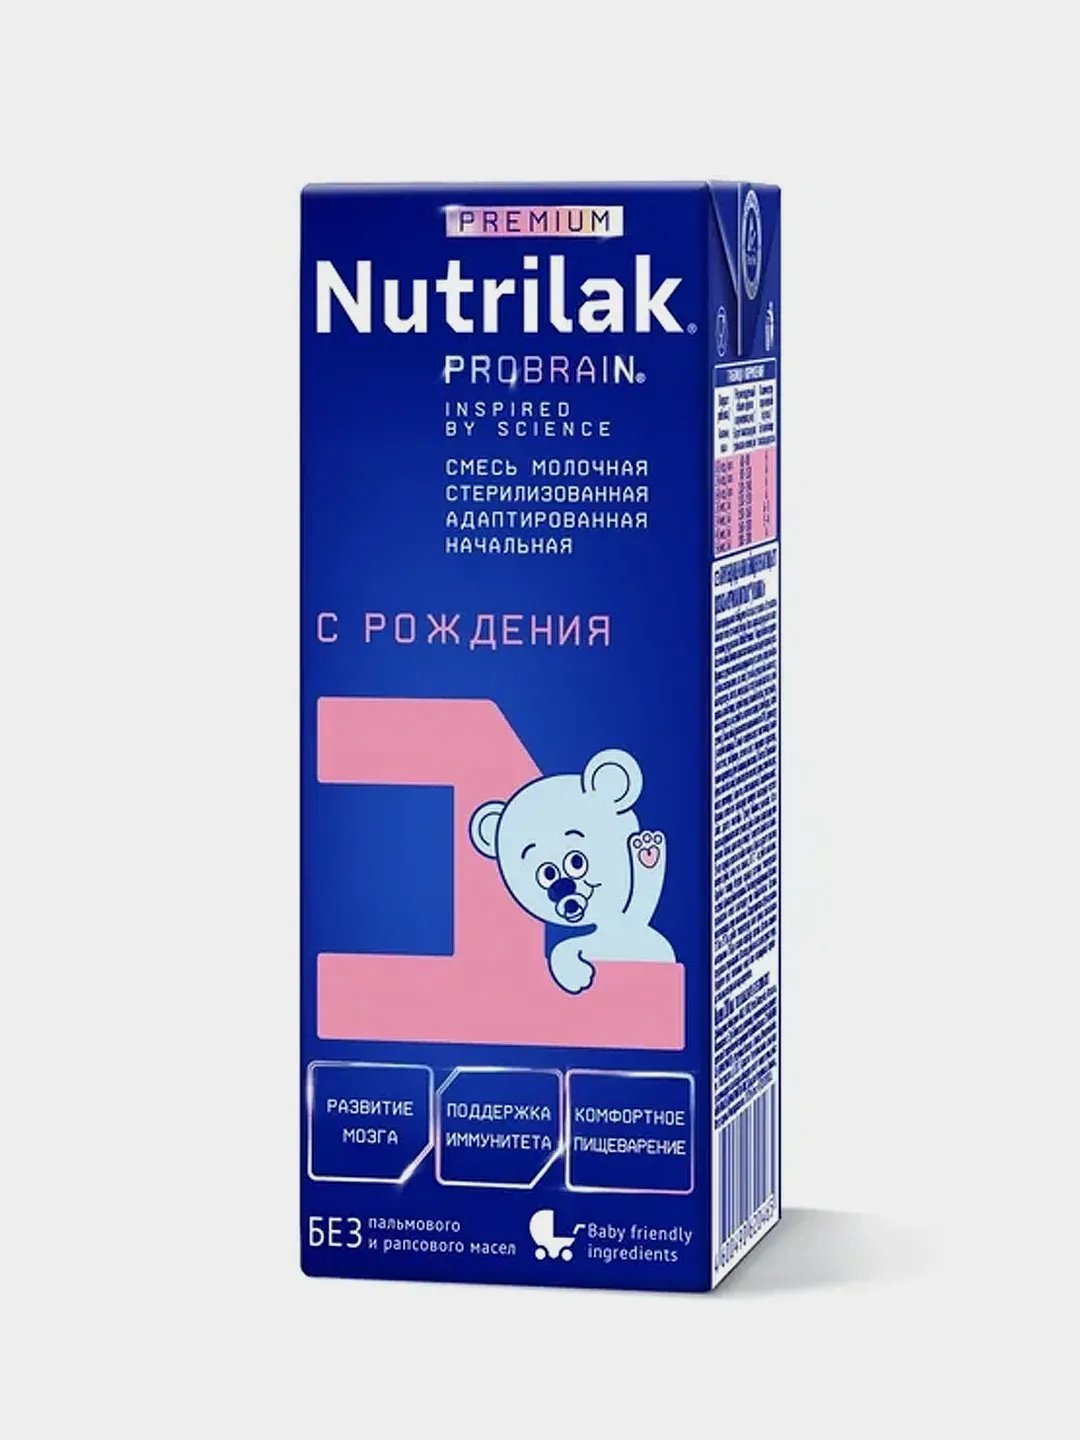 Nutrilak 1 готовая. Nutrilak Premium 1. Нутрилак премиум 1,05 кг штрих. Nutrilak Premium 1 готовая к употреблению, с рождения отзывы. Смесь Нутрилак 1 премиум стерилизованная вред.